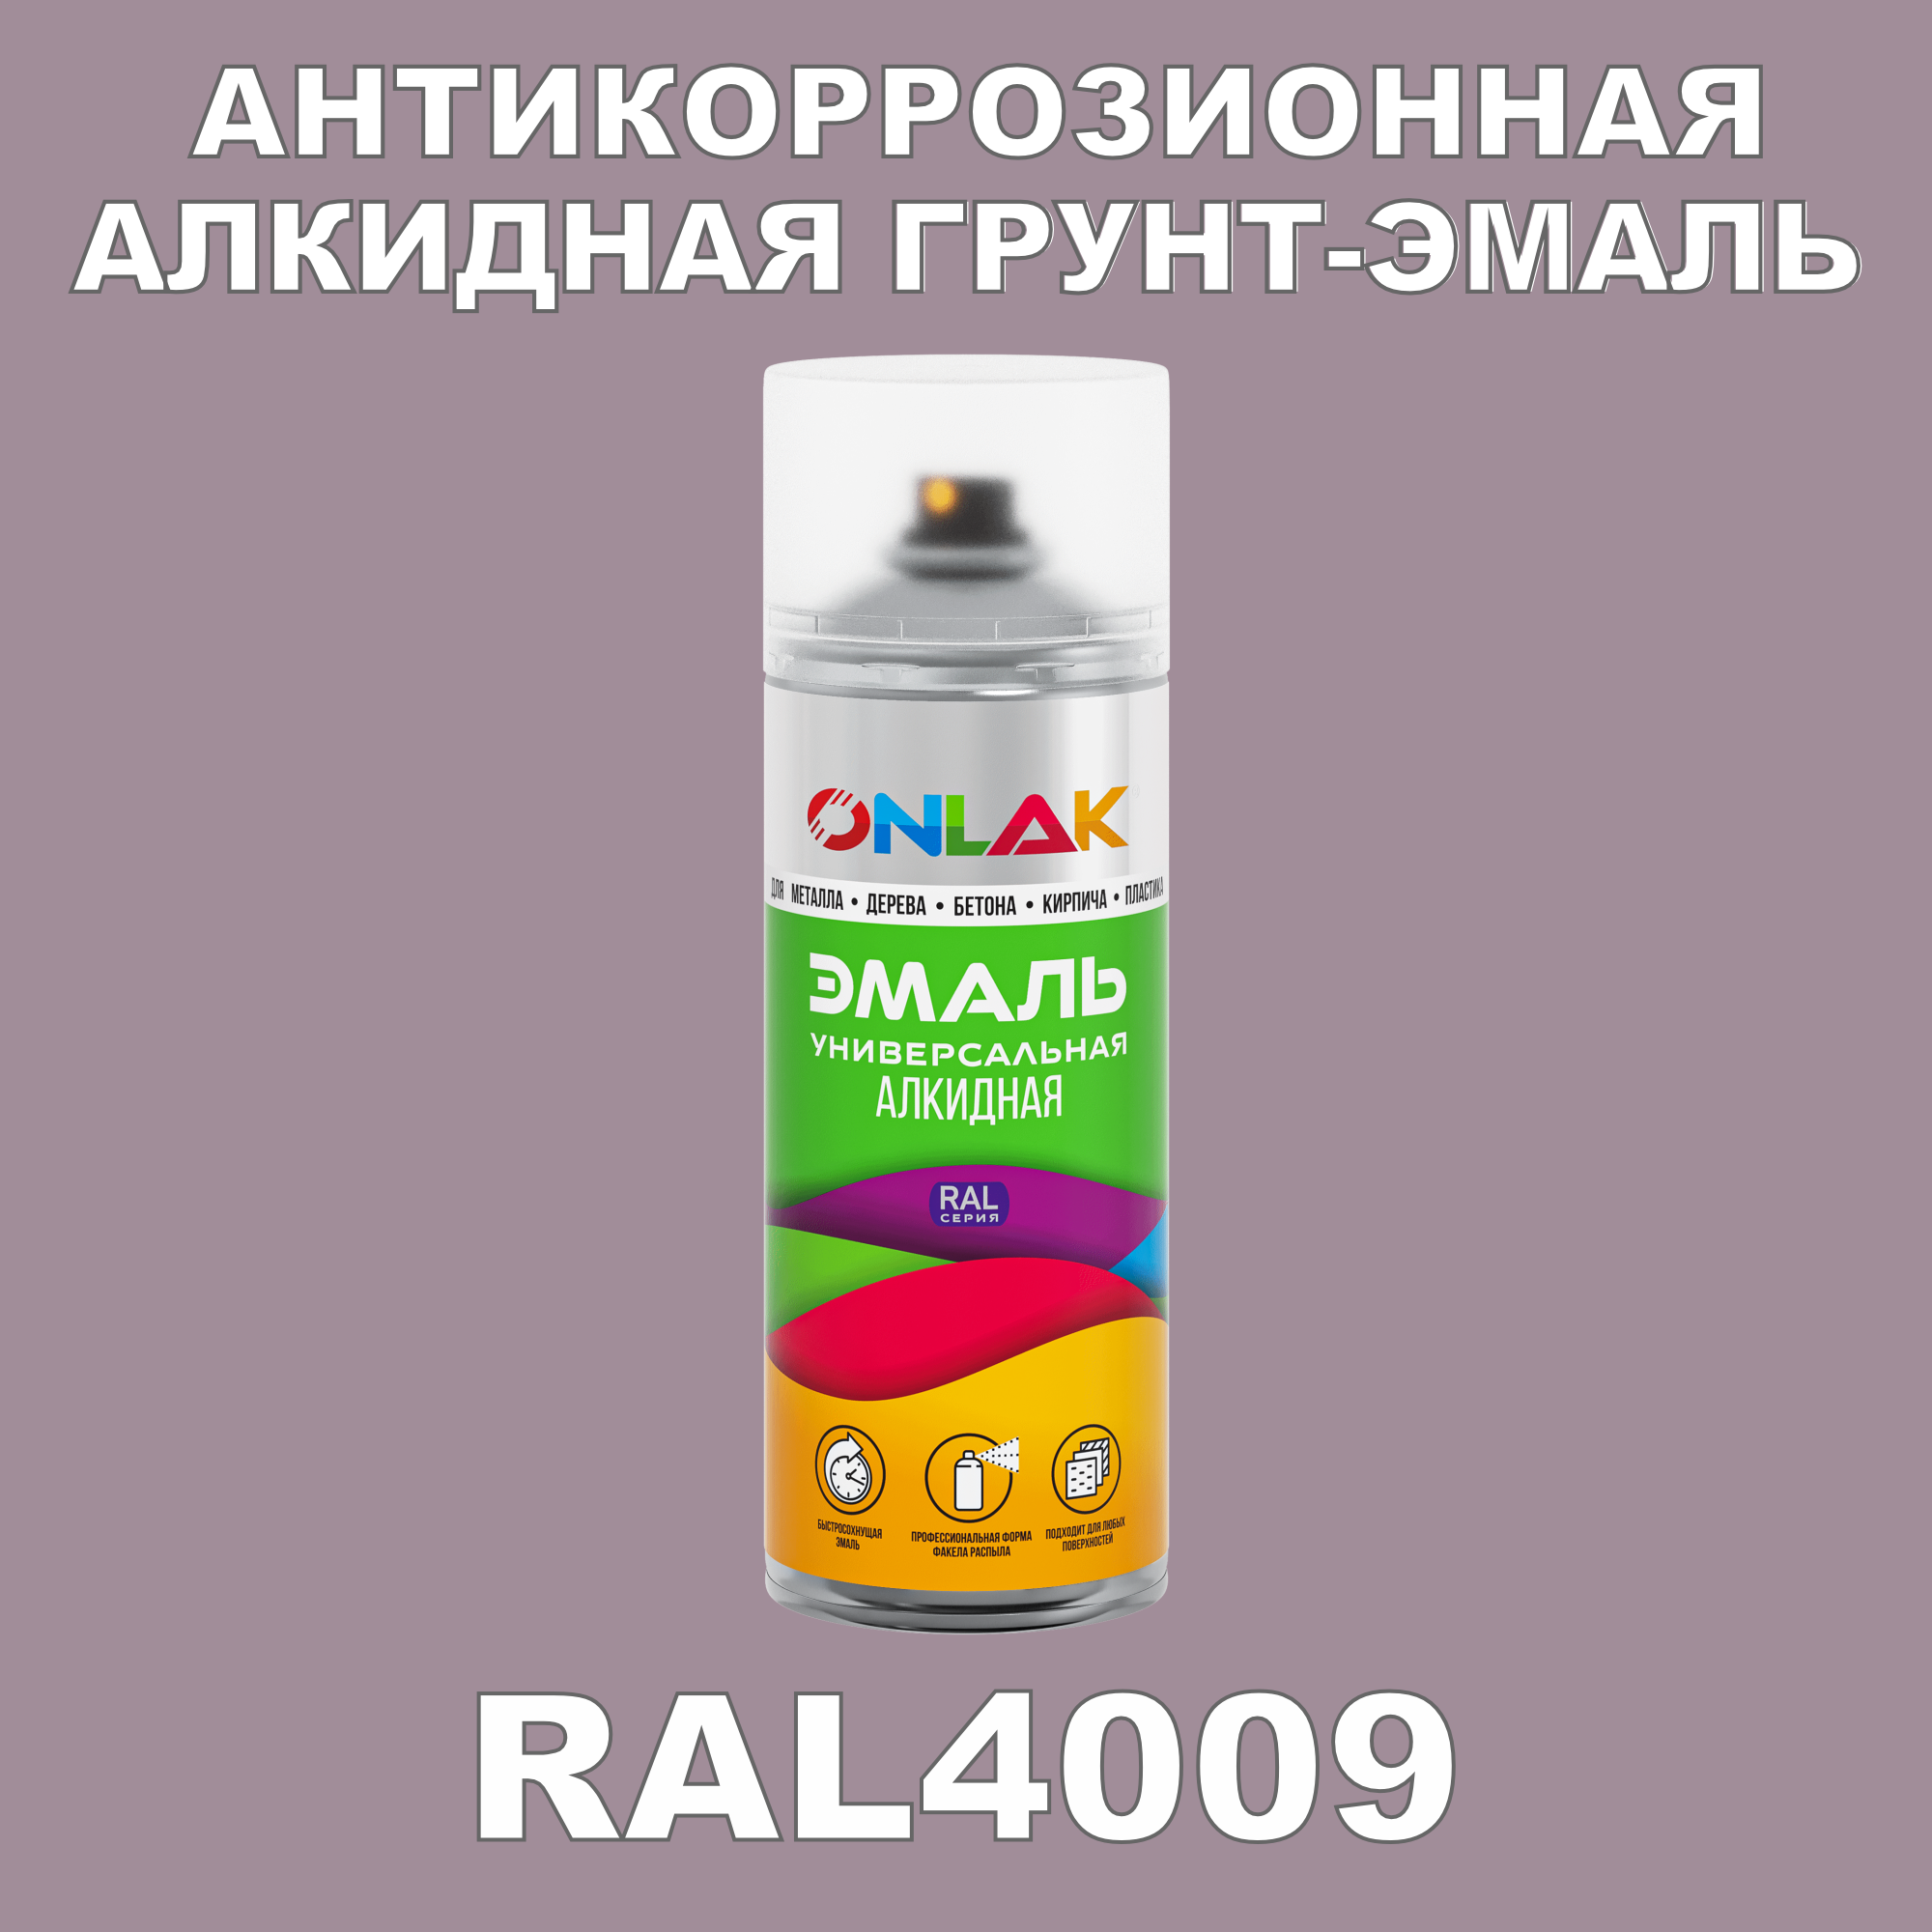 Антикоррозионная грунт-эмаль ONLAK RAL 4009,фиолетовый,593 мл artuniq color violet цветной грунт для аквариума фиолетовый 3 кг